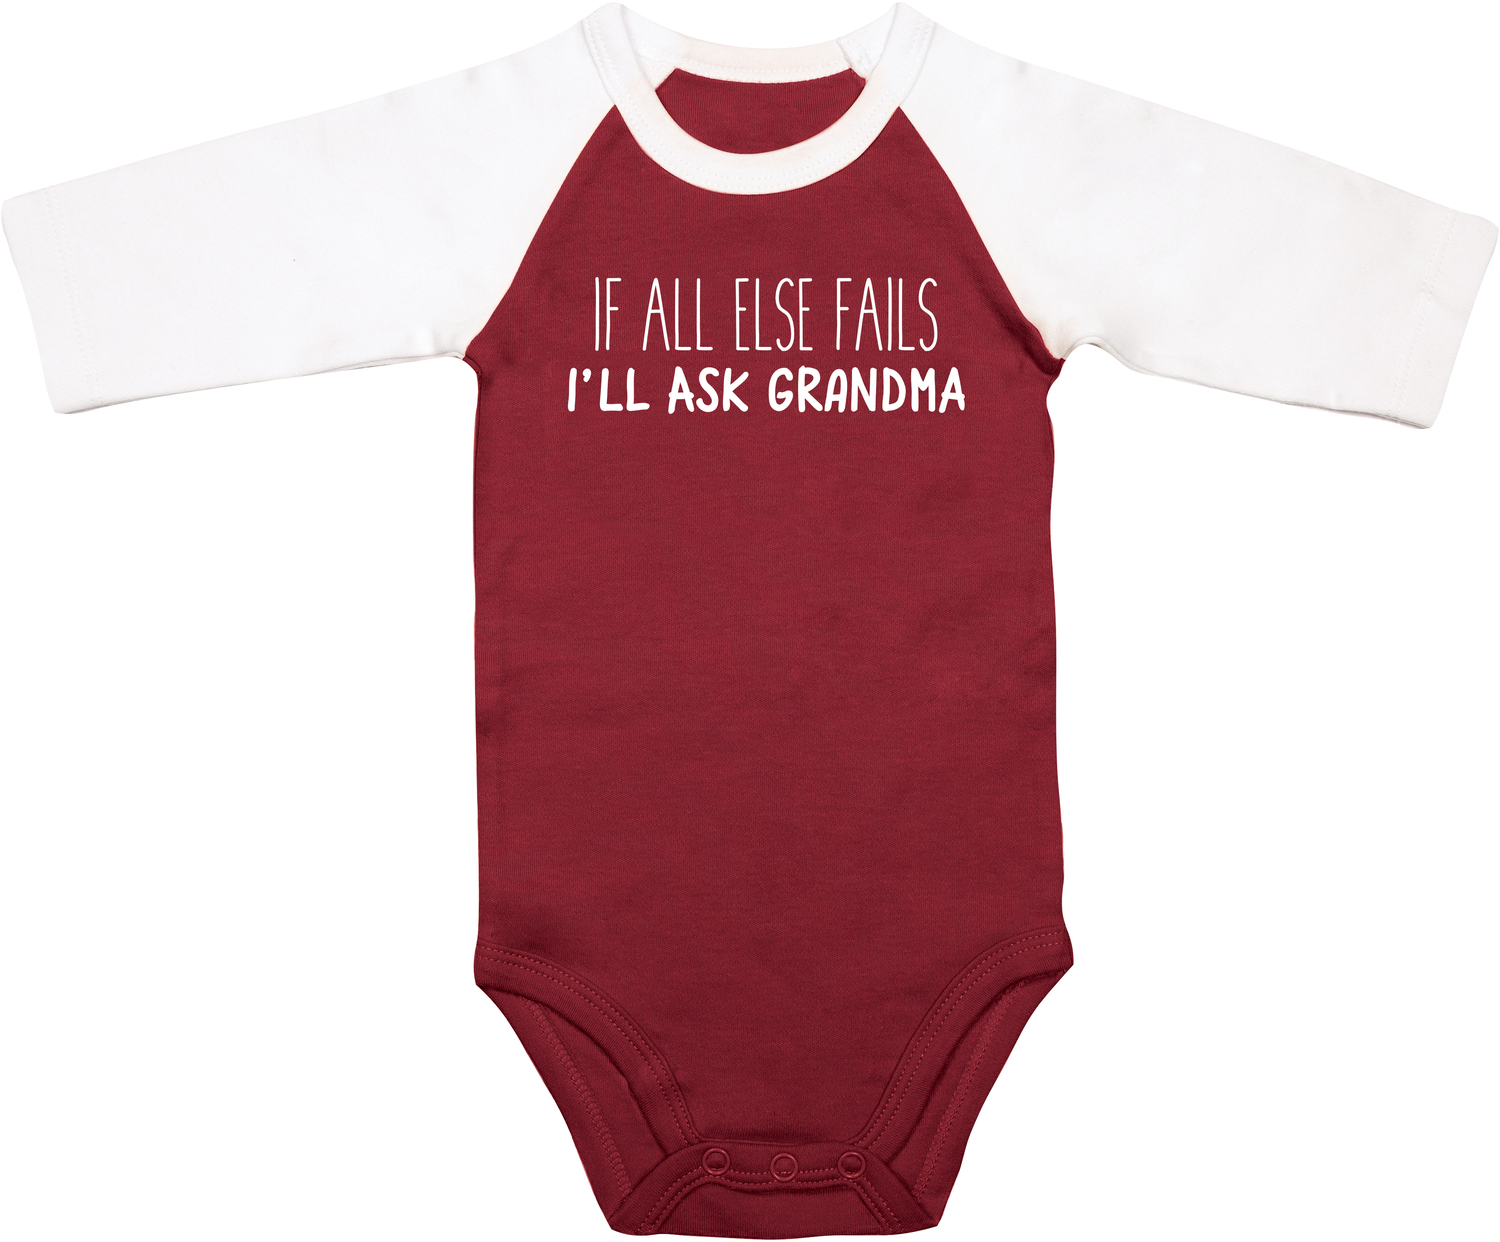 Ask Grandma by Sidewalk Talk - Ask Grandma - 6-12 Months
3/4 Length Sleeve Maroon Onesie